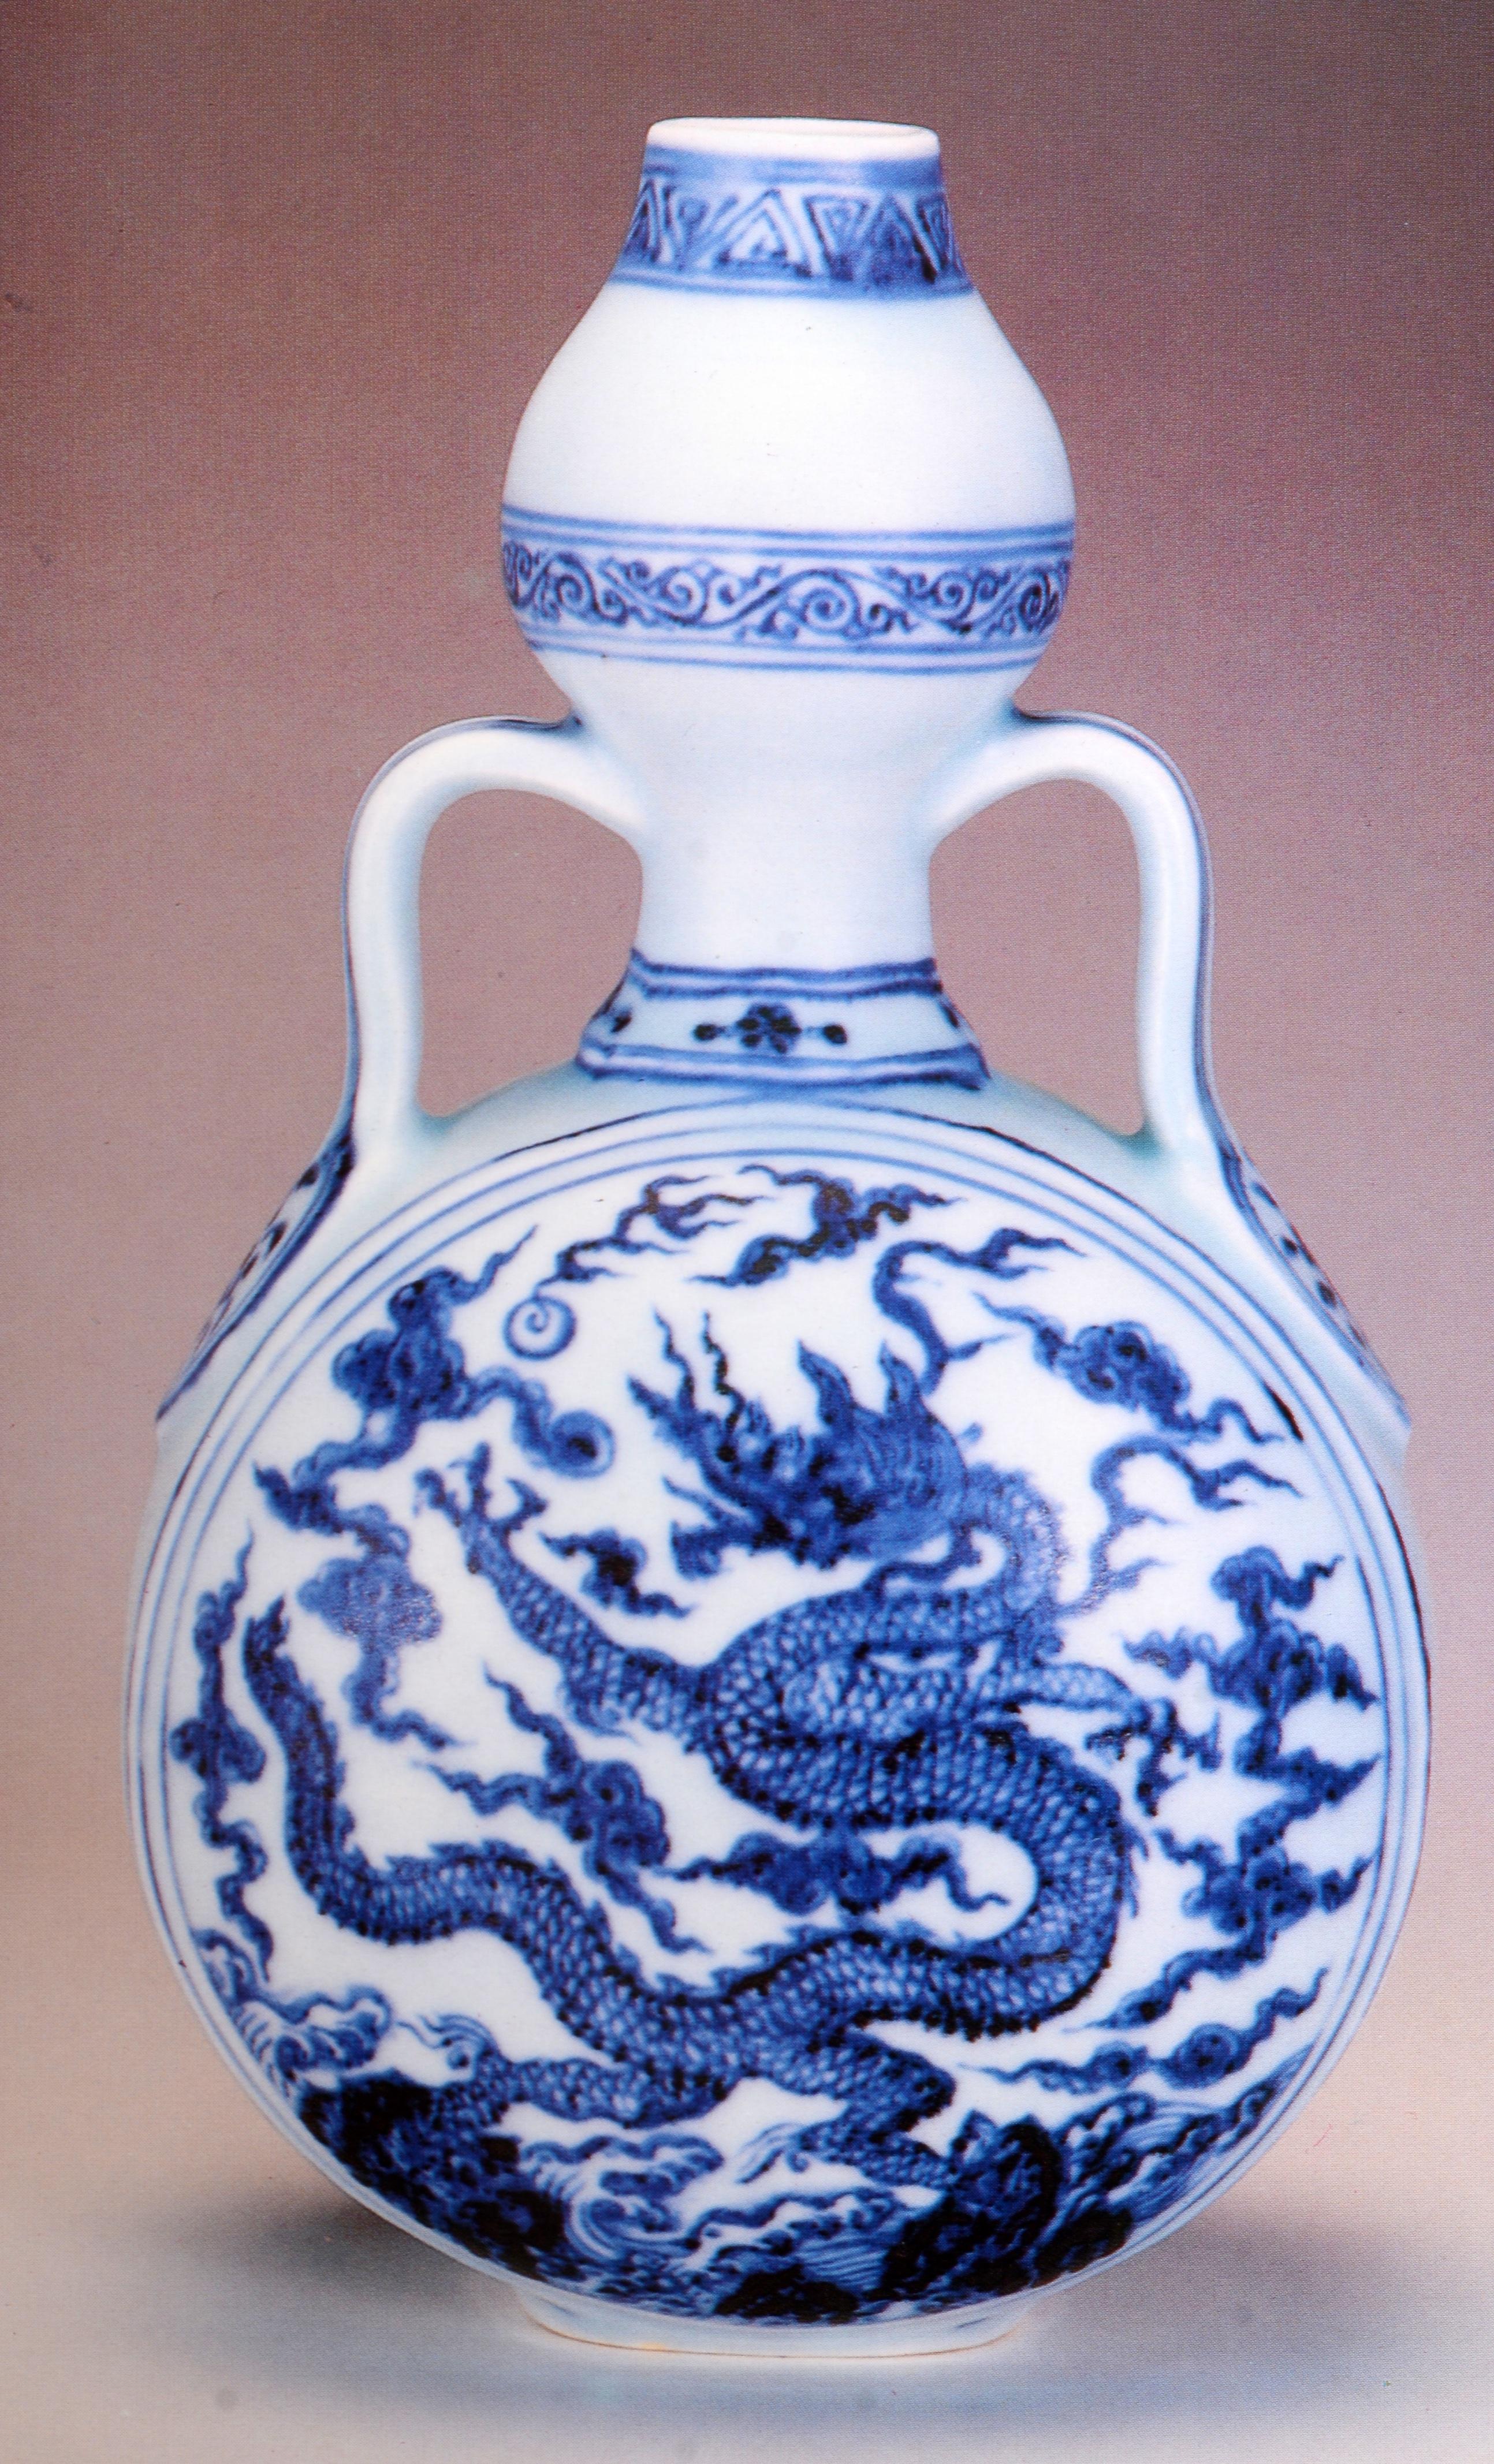 Papier Collections privées et de confiance familiale de T. Y. Chao d'importantes céramiques chinoises rares en vente